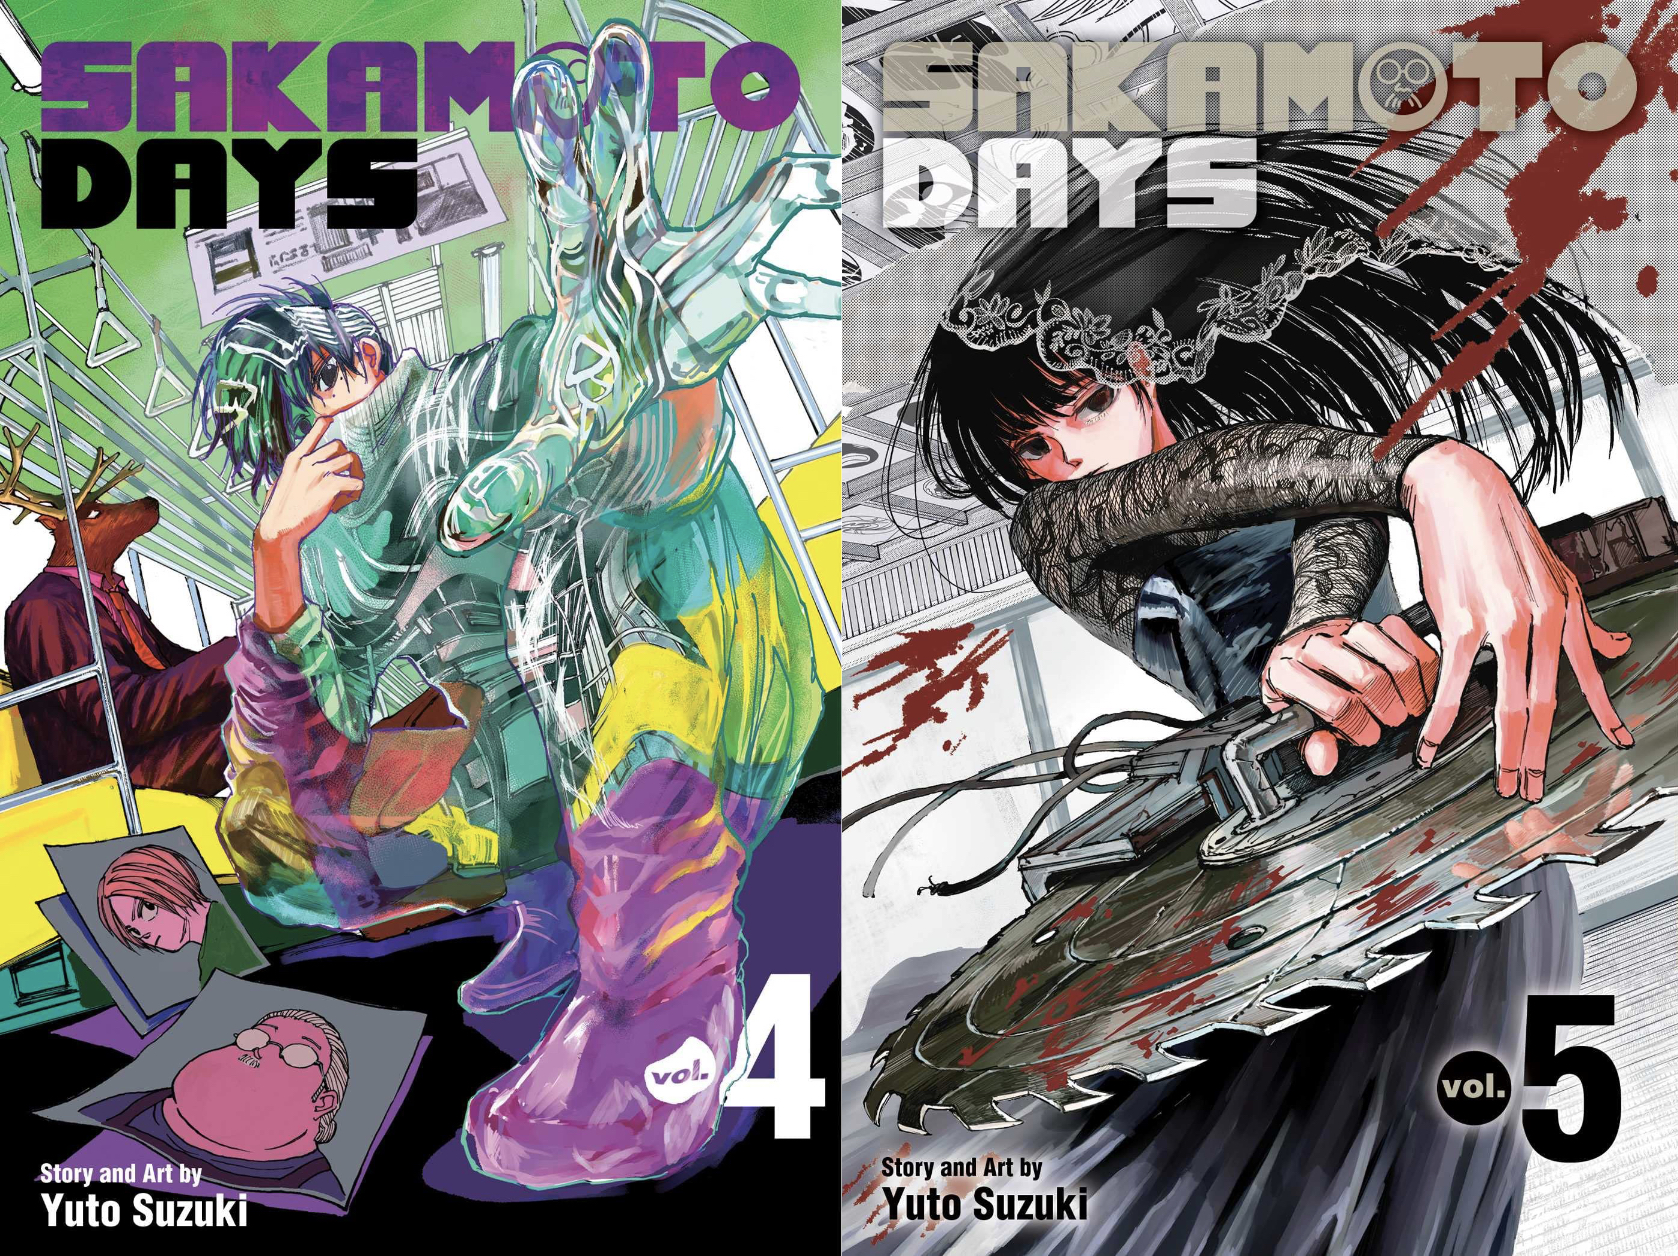 REVIEW, Sakamoto Days - Vols. 4 & 5